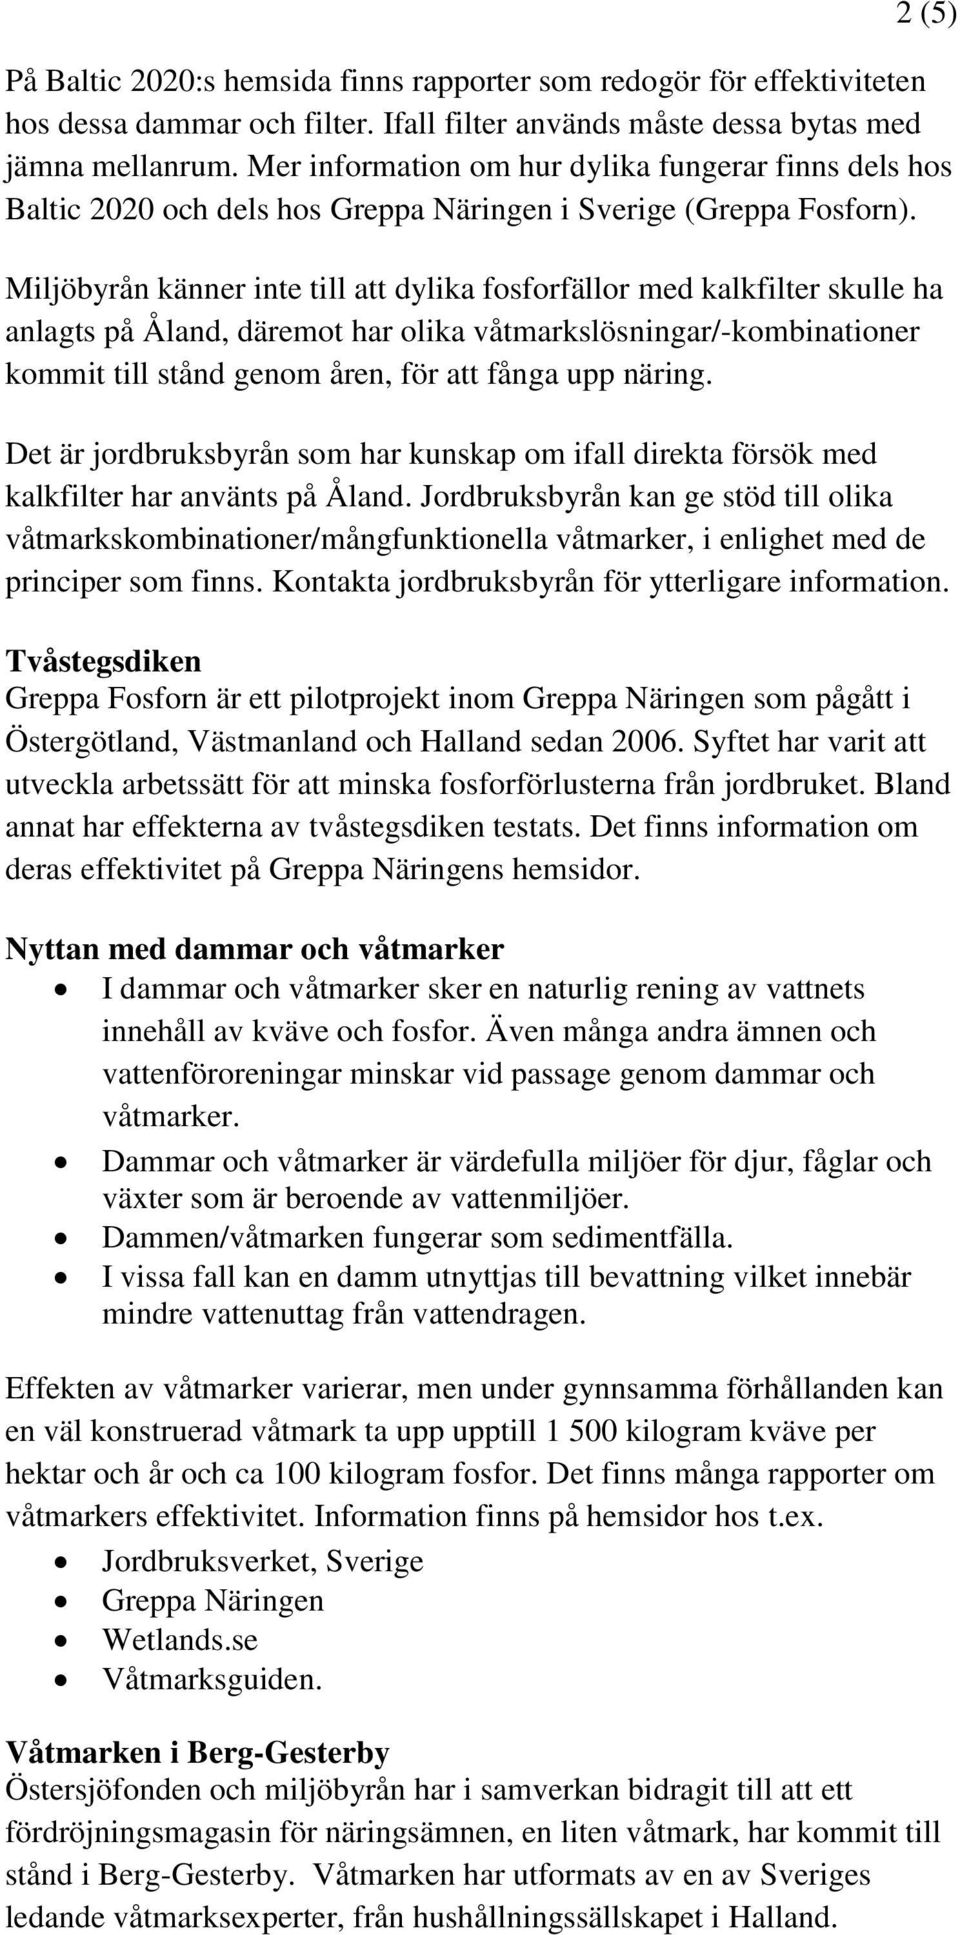 Miljöbyrån känner inte till att dylika fosforfällor med kalkfilter skulle ha anlagts på Åland, däremot har olika våtmarkslösningar/-kombinationer kommit till stånd genom åren, för att fånga upp